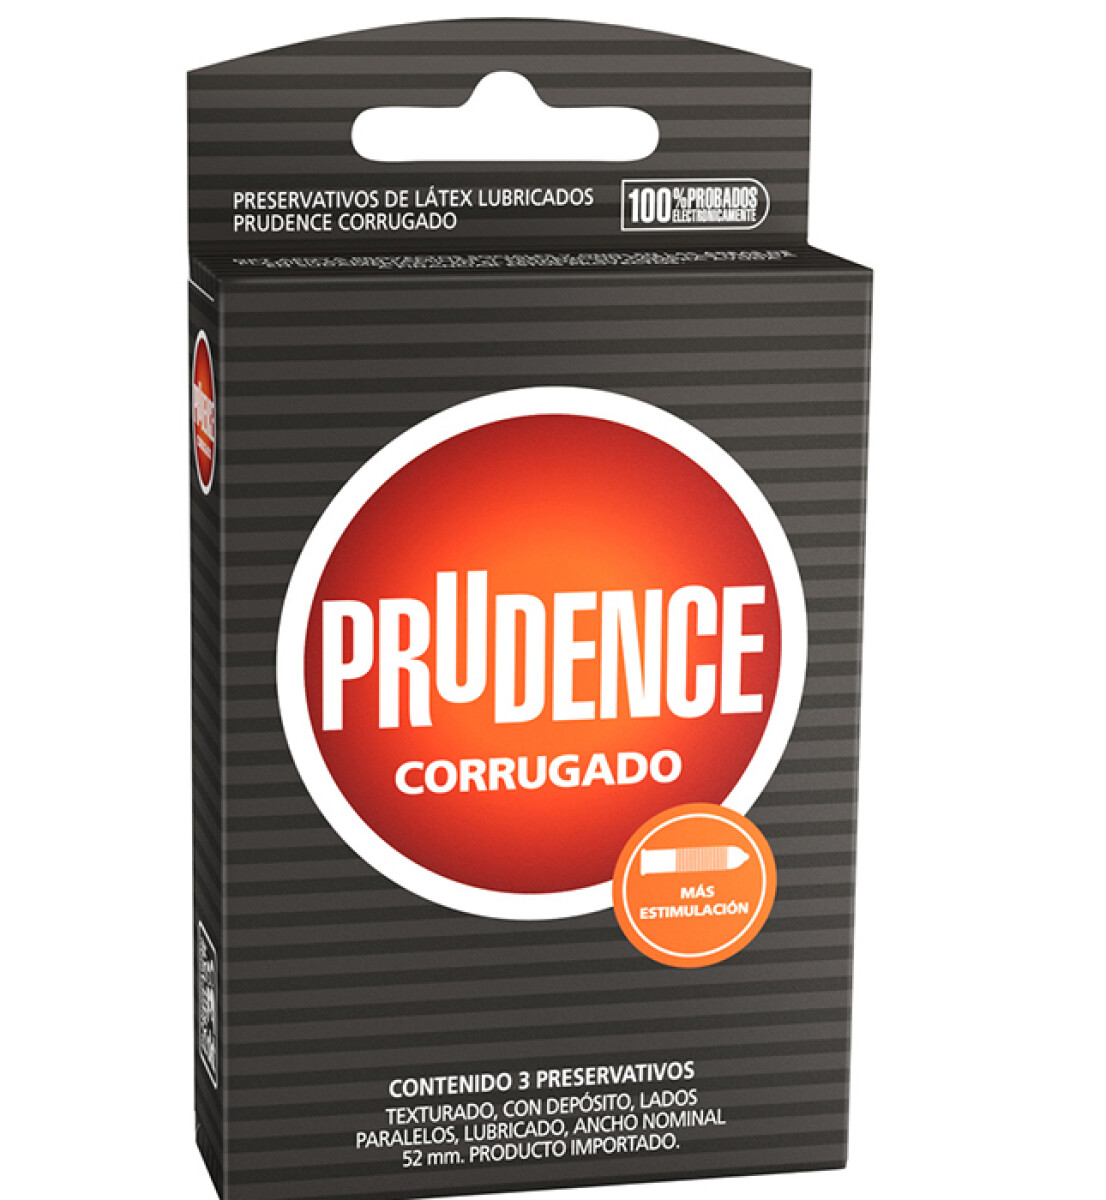 Preservativos Prudence - Corrugado 